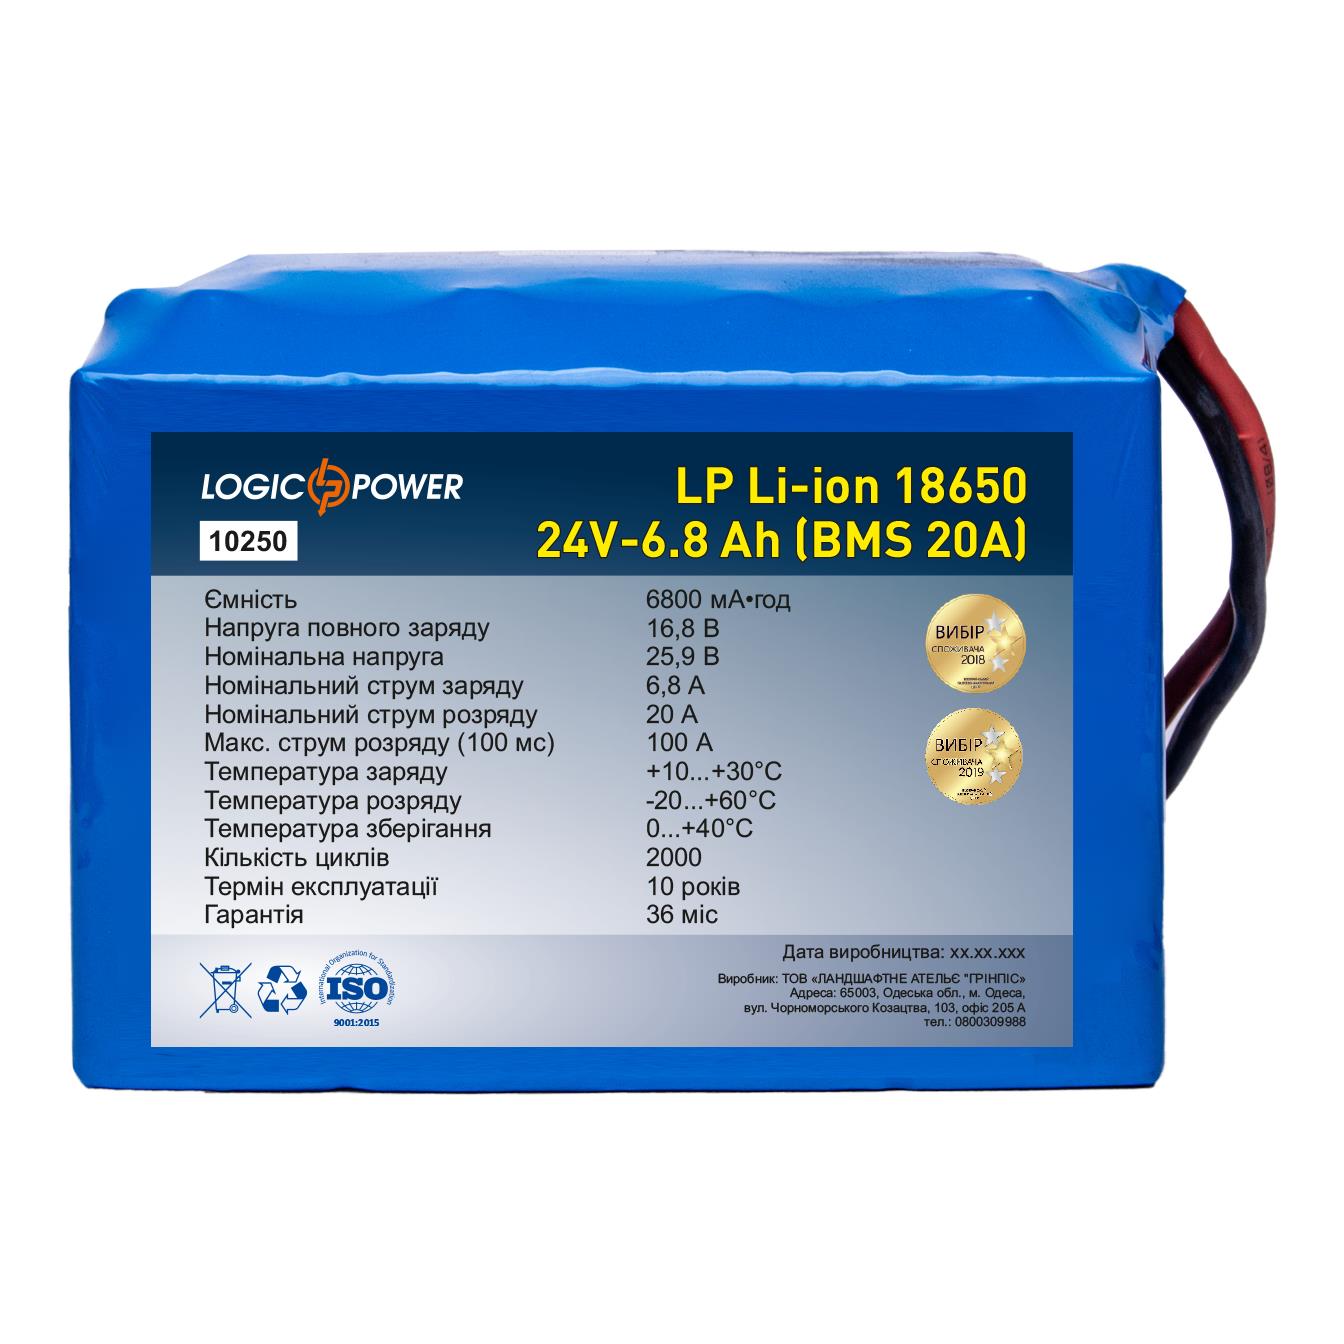 Акумулятор літій-іонний LogicPower LP Li-ion 18650 24V - 6.8 Ah (BMS 20A) (10250) в інтернет-магазині, головне фото